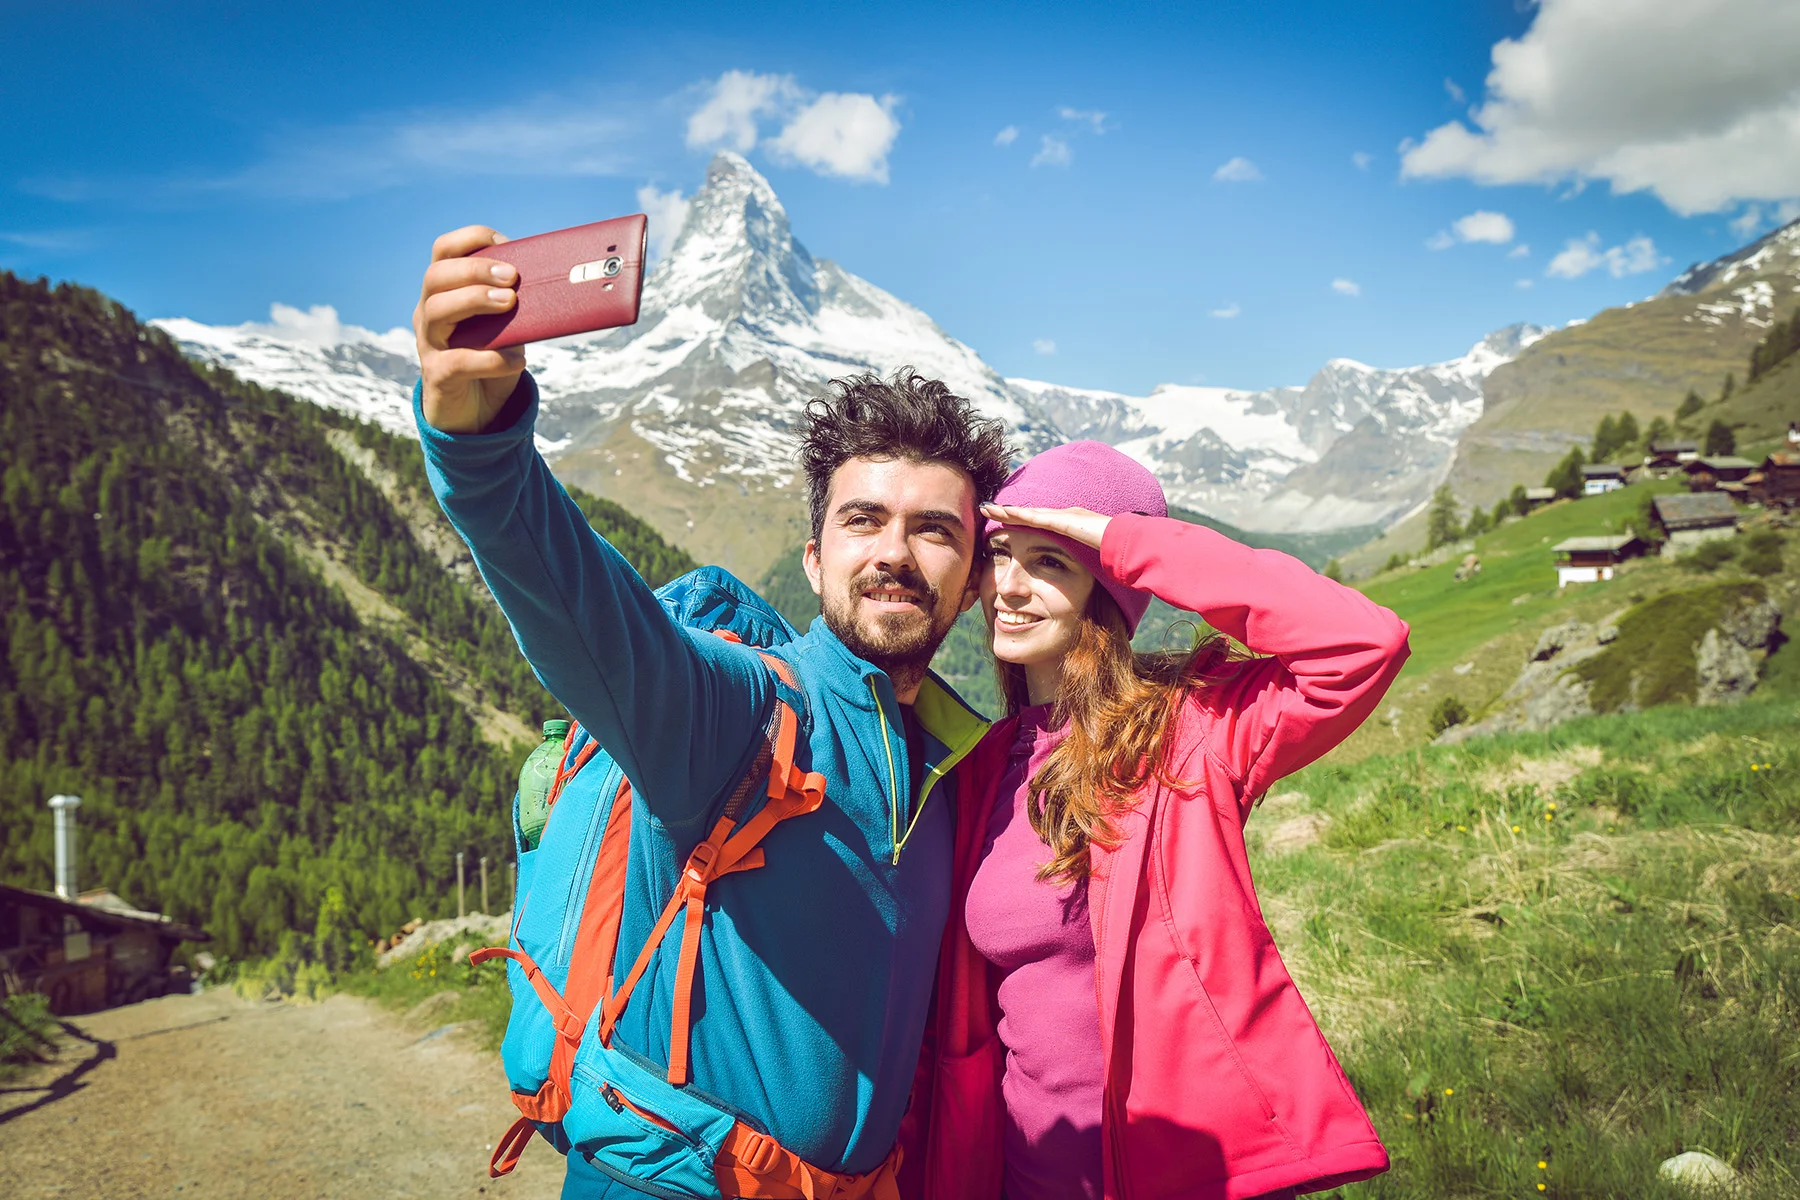 Hikers in Switzerland taking a selfie